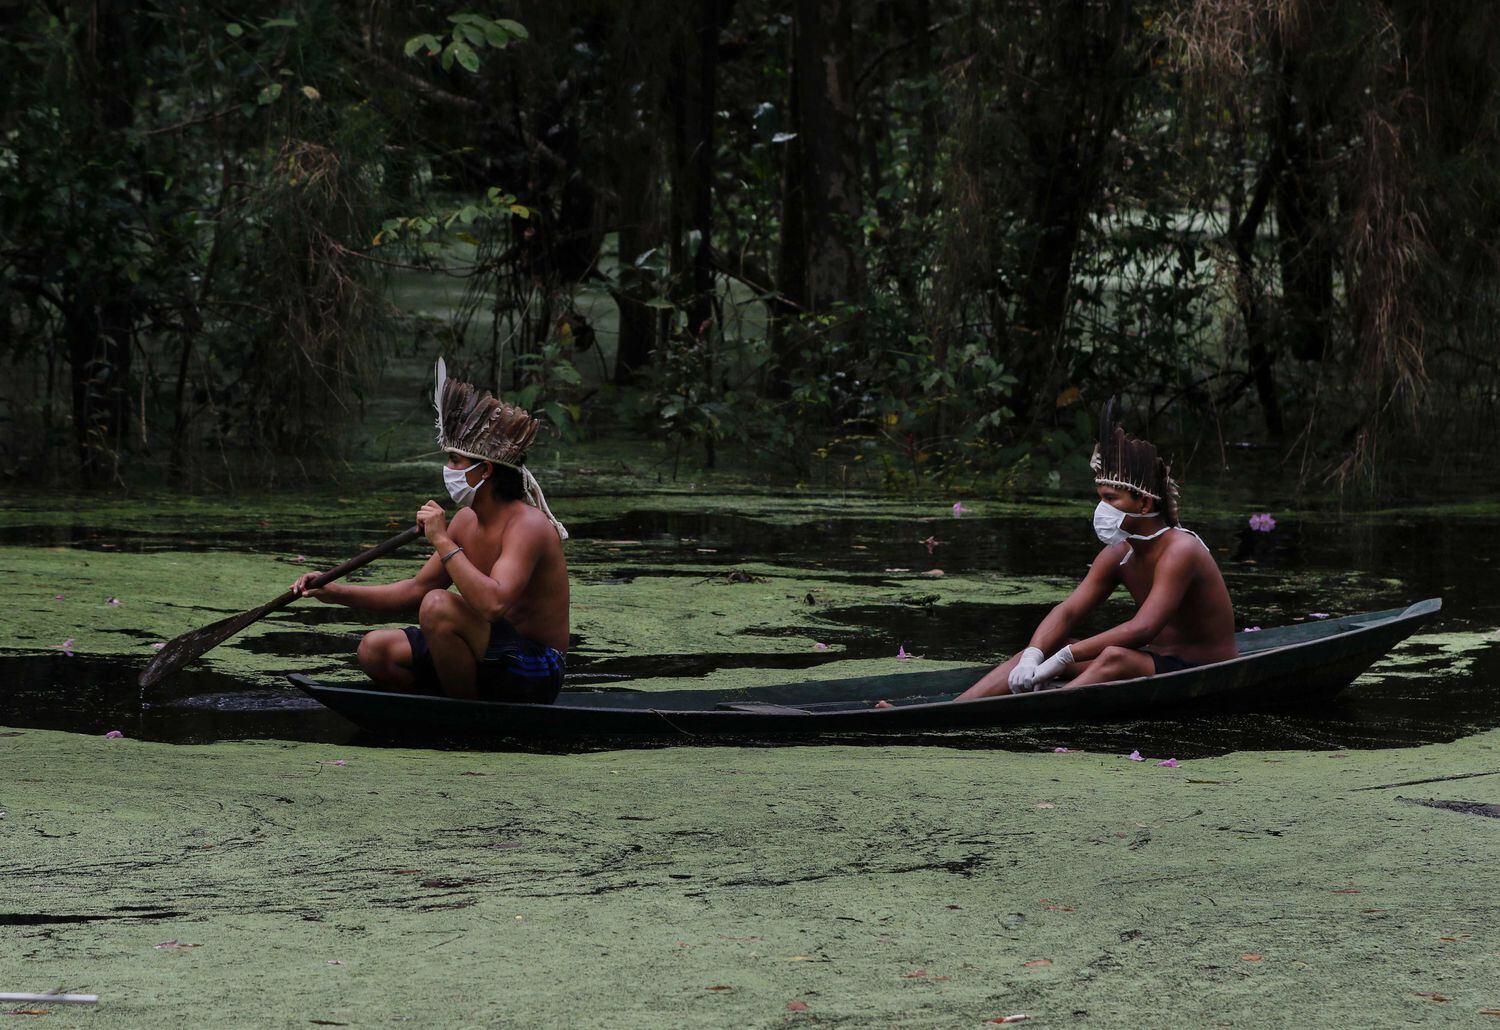 Indígenas com máscaras navegam pelo rio Ariaú, a 80 quilômetros de Manaus.